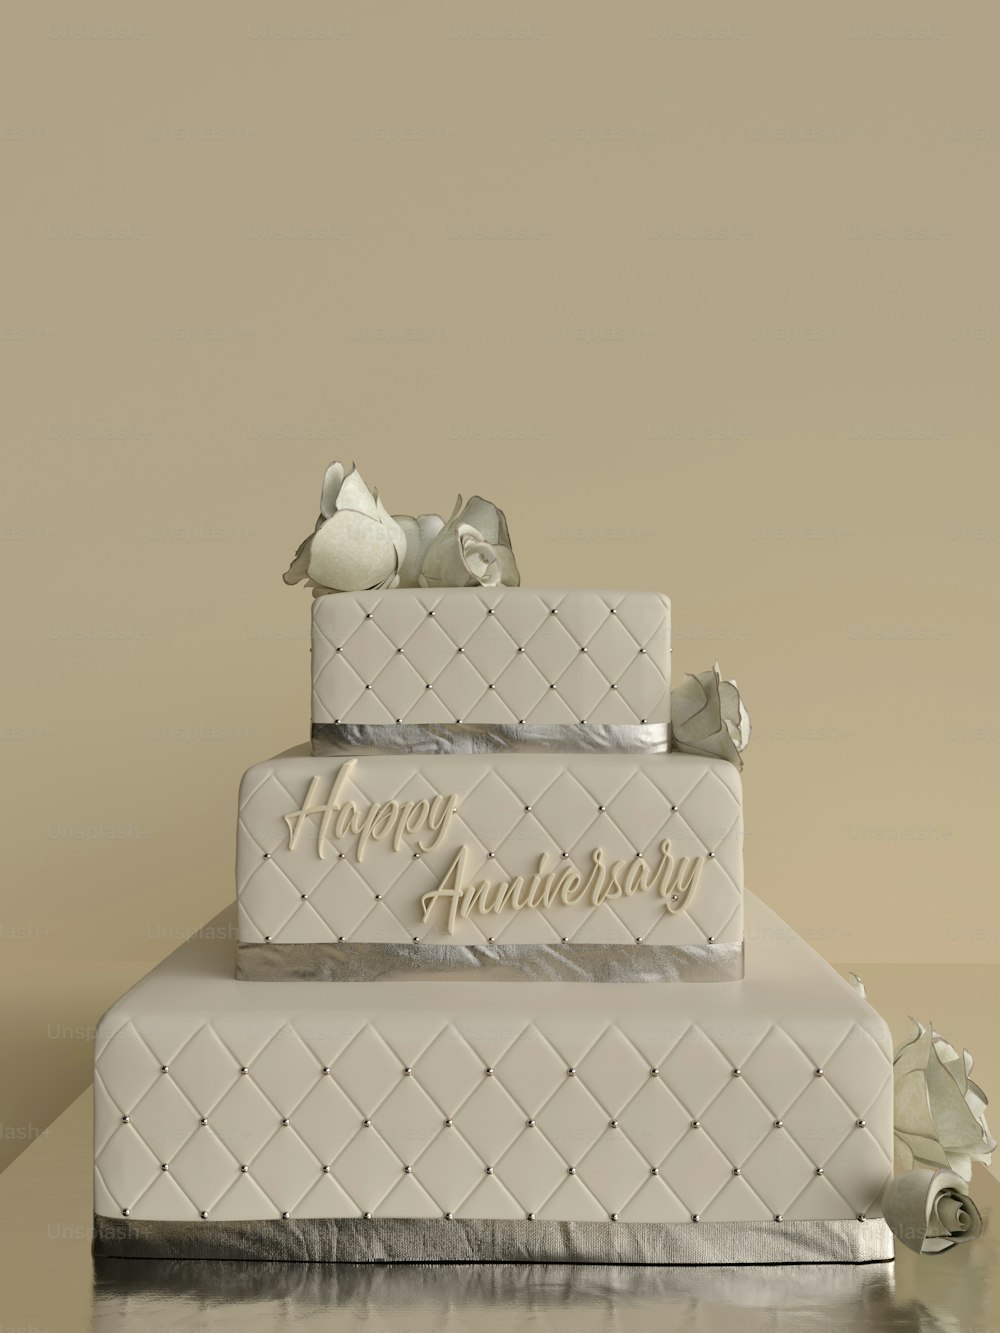 Una torta a tre livelli con un cartello di buon anniversario su di esso